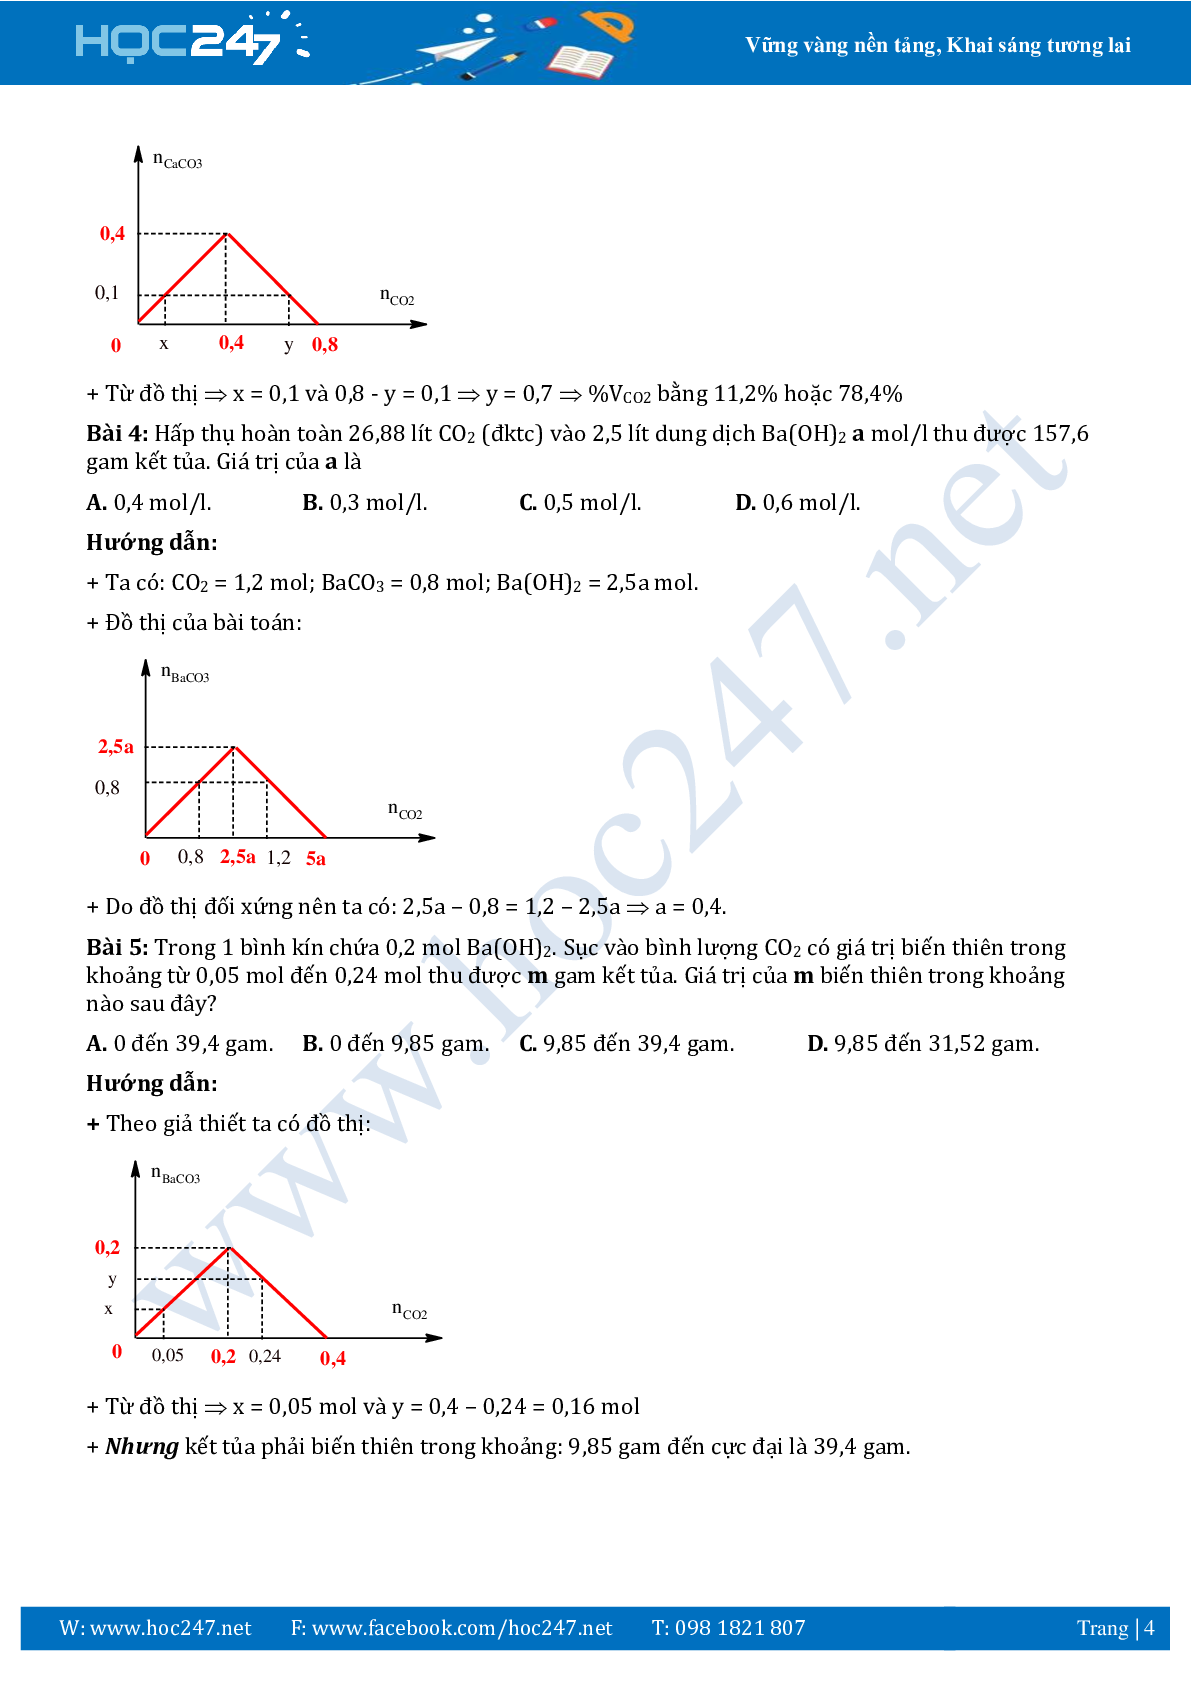 Chuyên đề sử dụng phương pháp đồ thị ôn thi THPTQG môn Hóa học (trang 4)